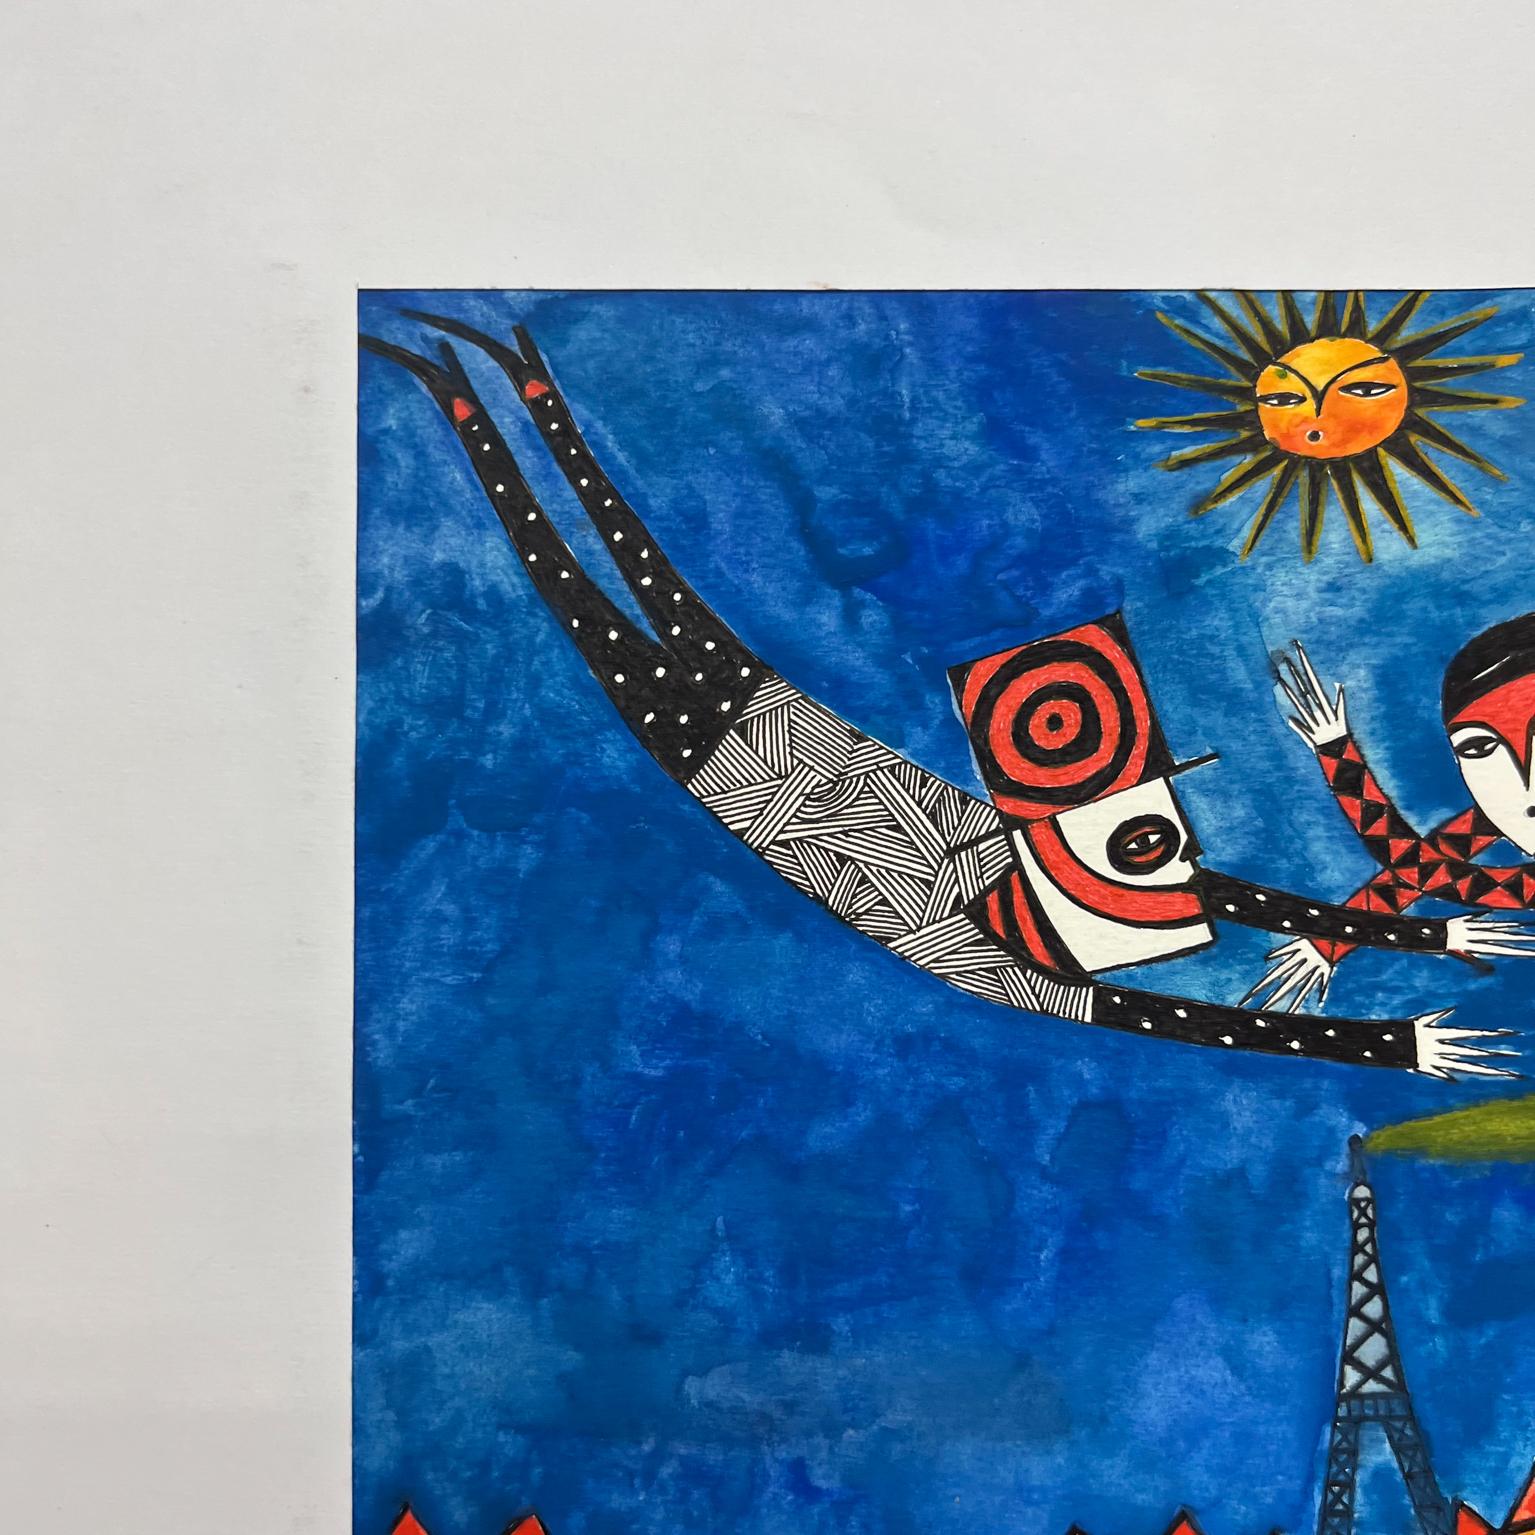 Vibrierende moderne mexikanische Kunst Zeichnung 7 Eiffelturm oaxacan Künstler unterzeichnet.
Tusche auf Papier Zeichnung, Original Art, Custom made paper.
Inspiration Sergio Hernández
Maße: 19,75 x 15,75 Art 12,5 x 9,5.
Signiert vom